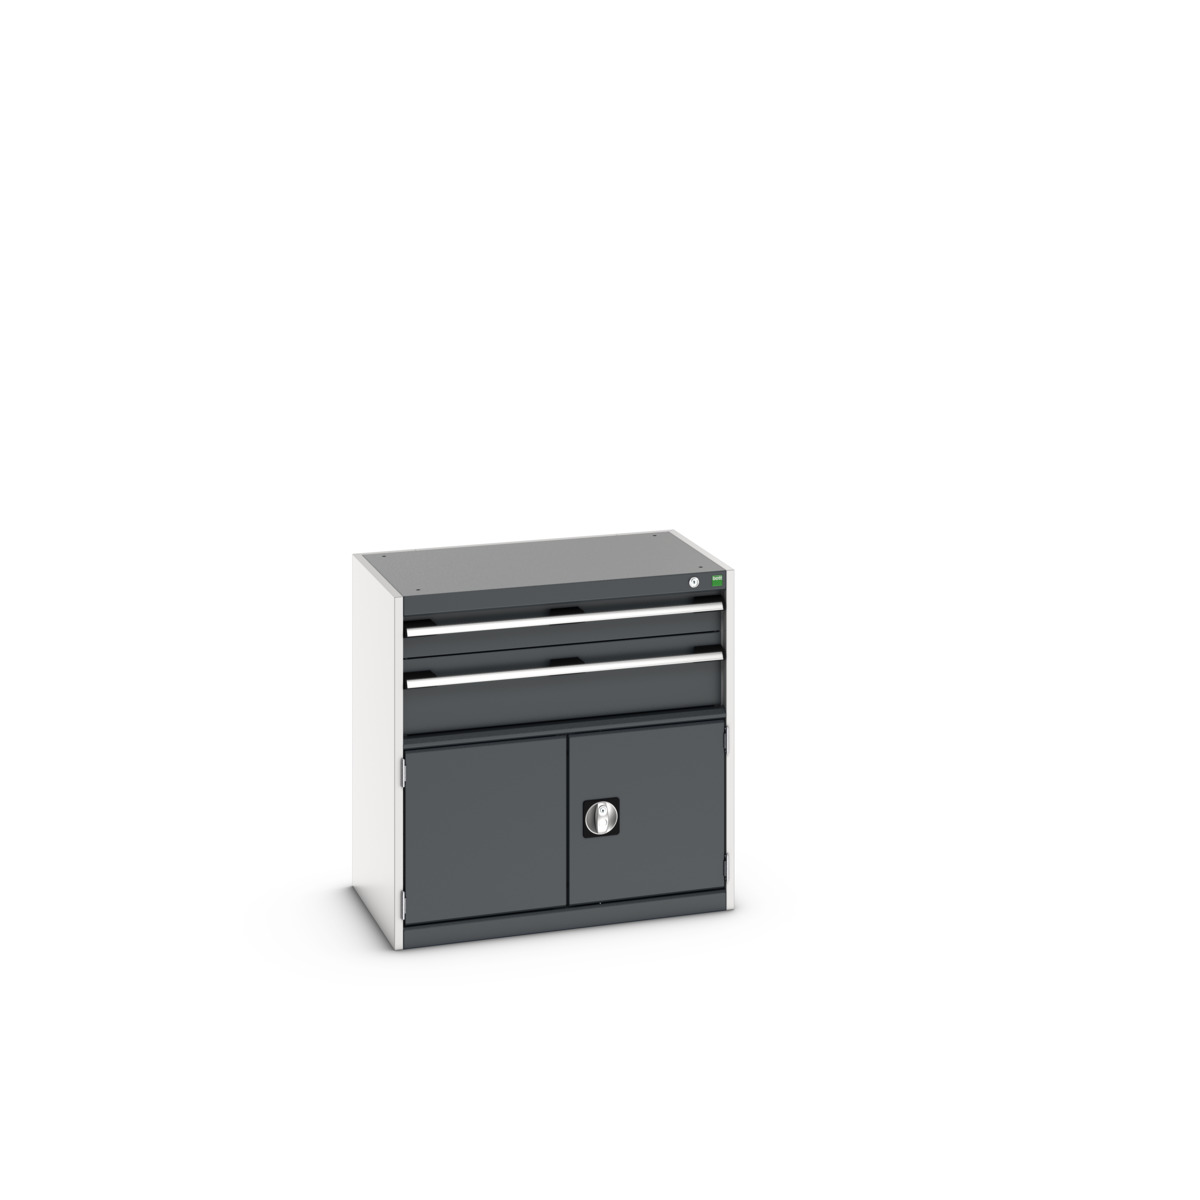 40012013. - cubio drawer-door cabinet